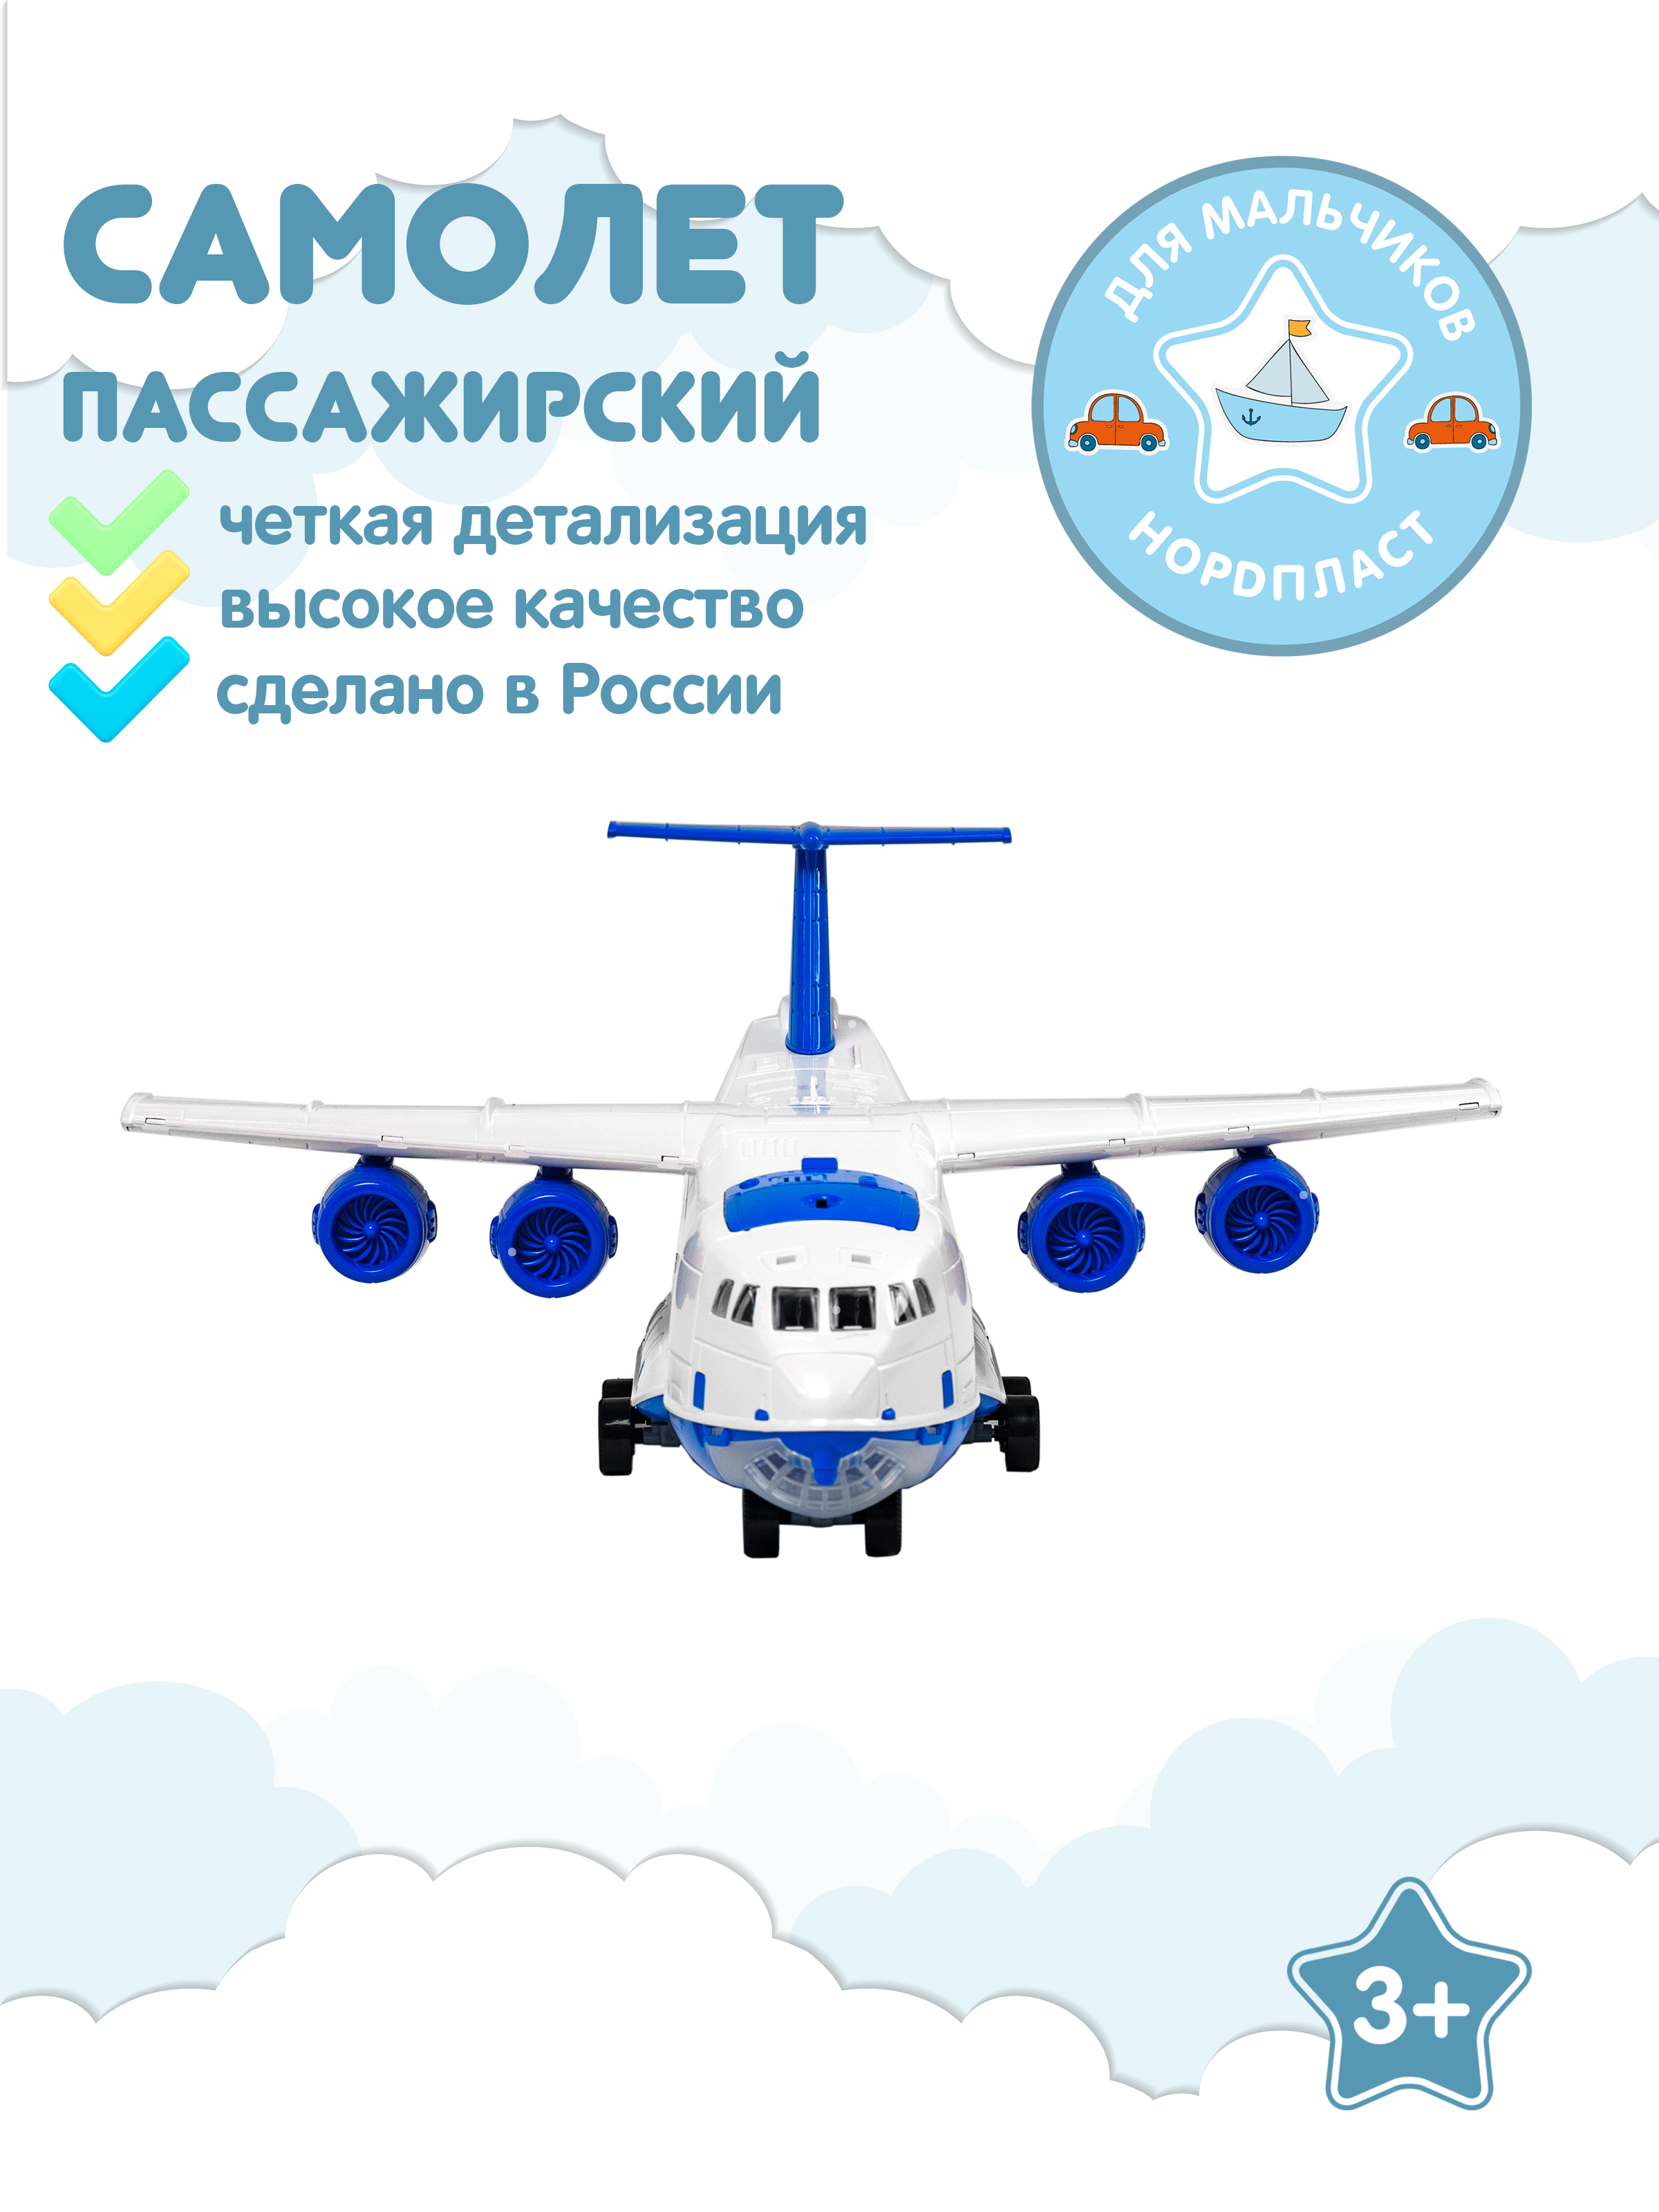 Самолет гражданский, пассажирский Нордпласт, игрушечный, большой, на батарейках джип вездеход радиоуправление свет на батарейках синий